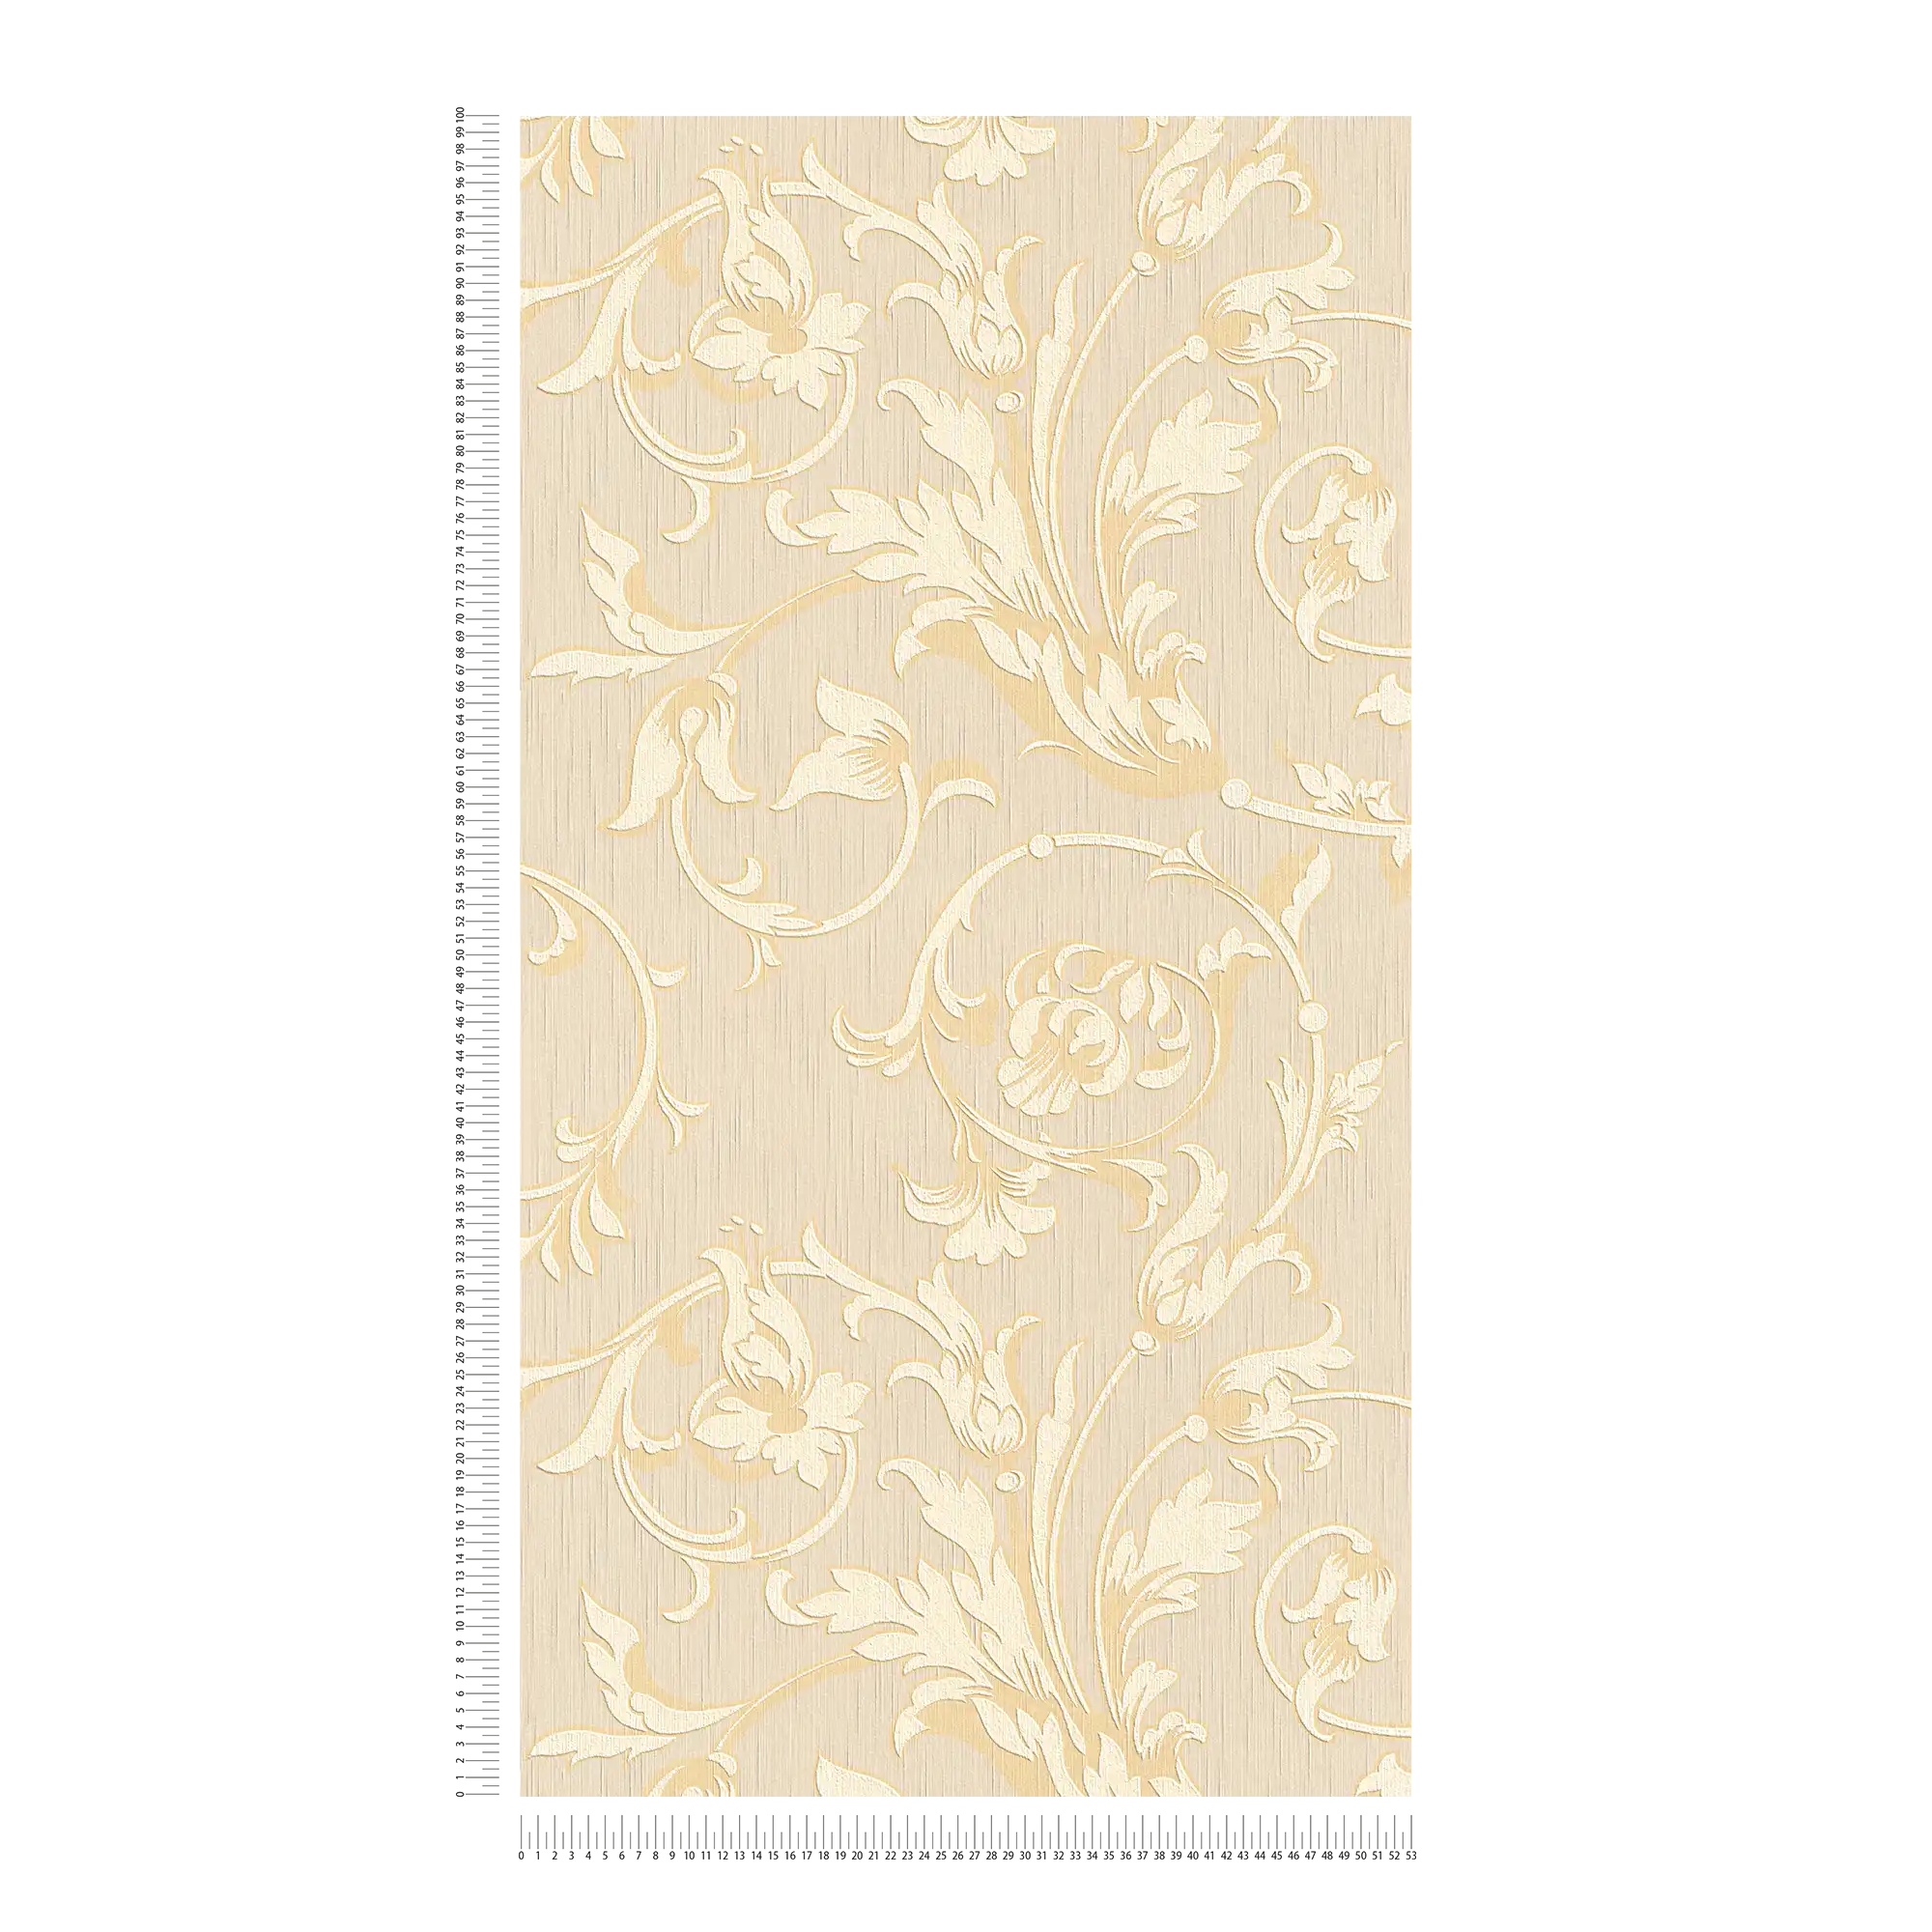             Papel pintado ornamental con aspecto de seda - crema, dorado, beige
        